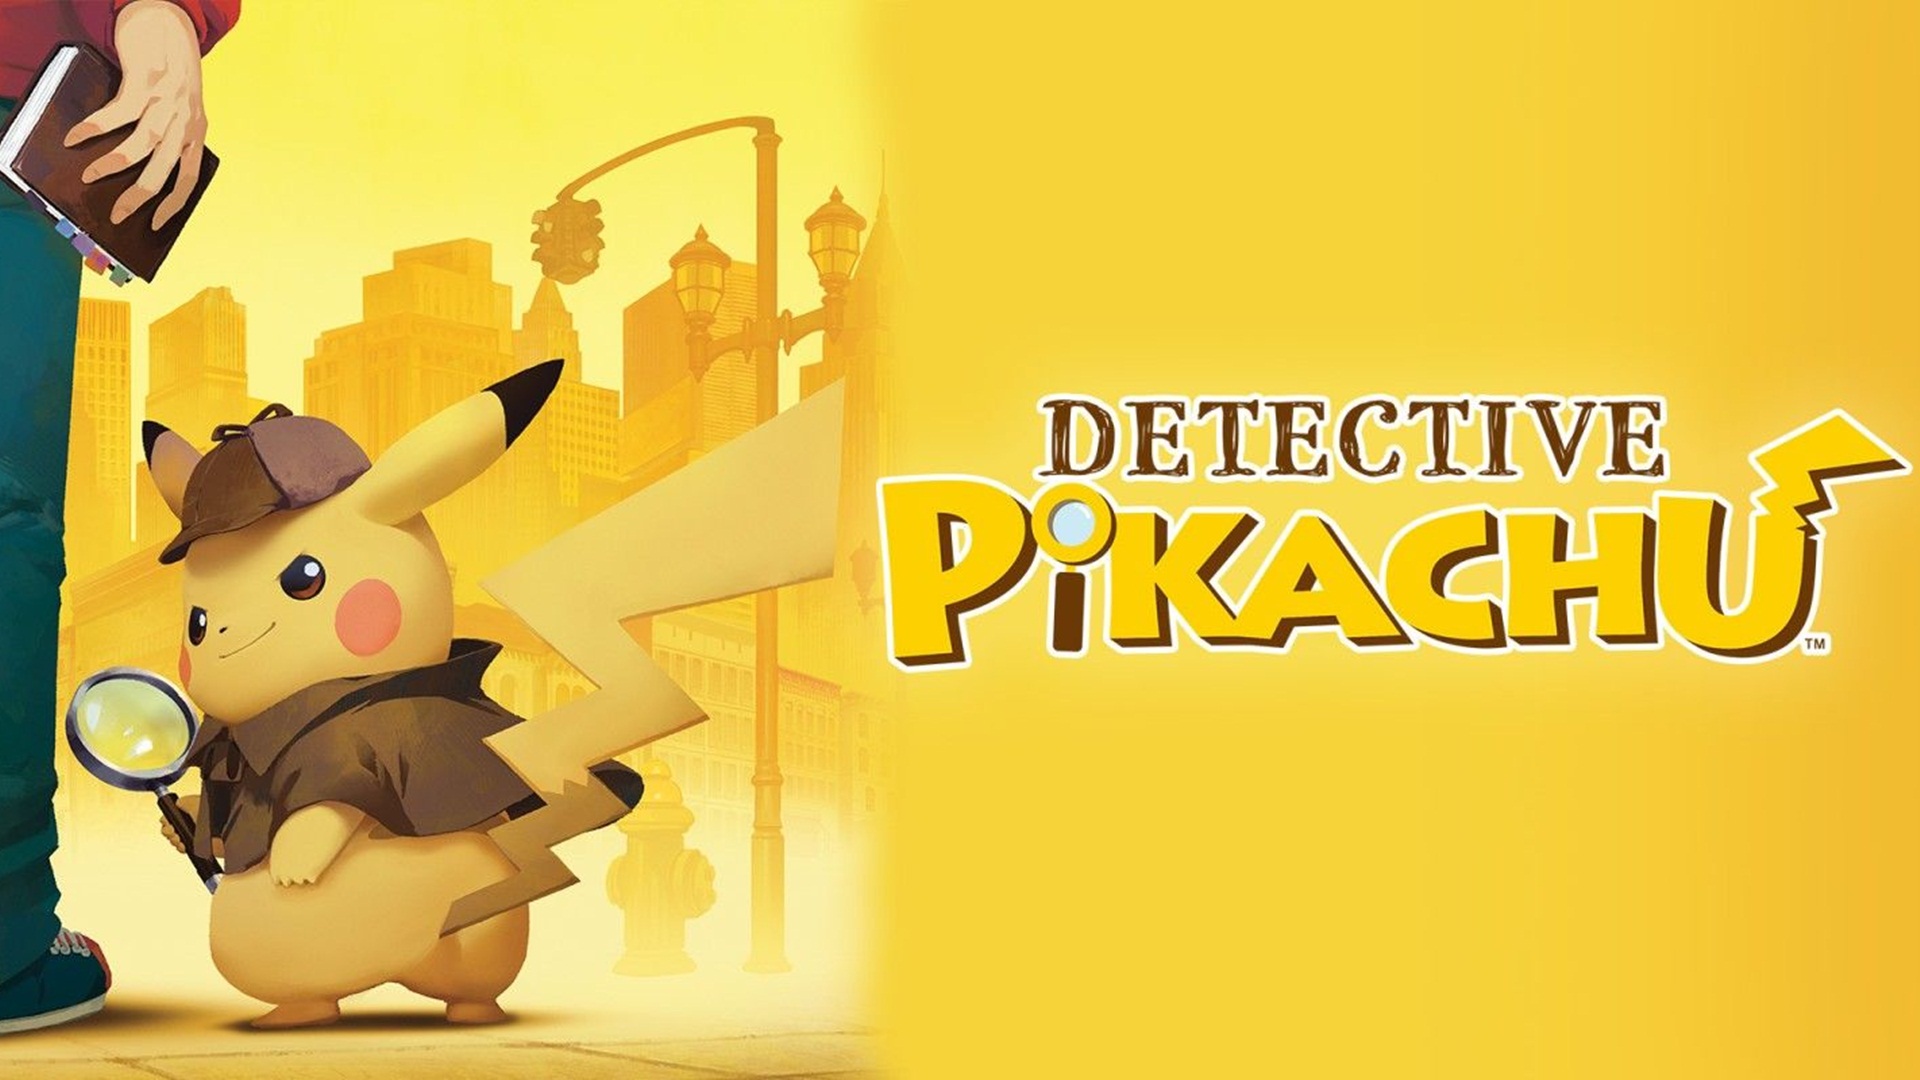 Pokemon Detective Pikachu Wallpaper Hd - Detective Pikachu Visuel Hd - HD Wallpaper 